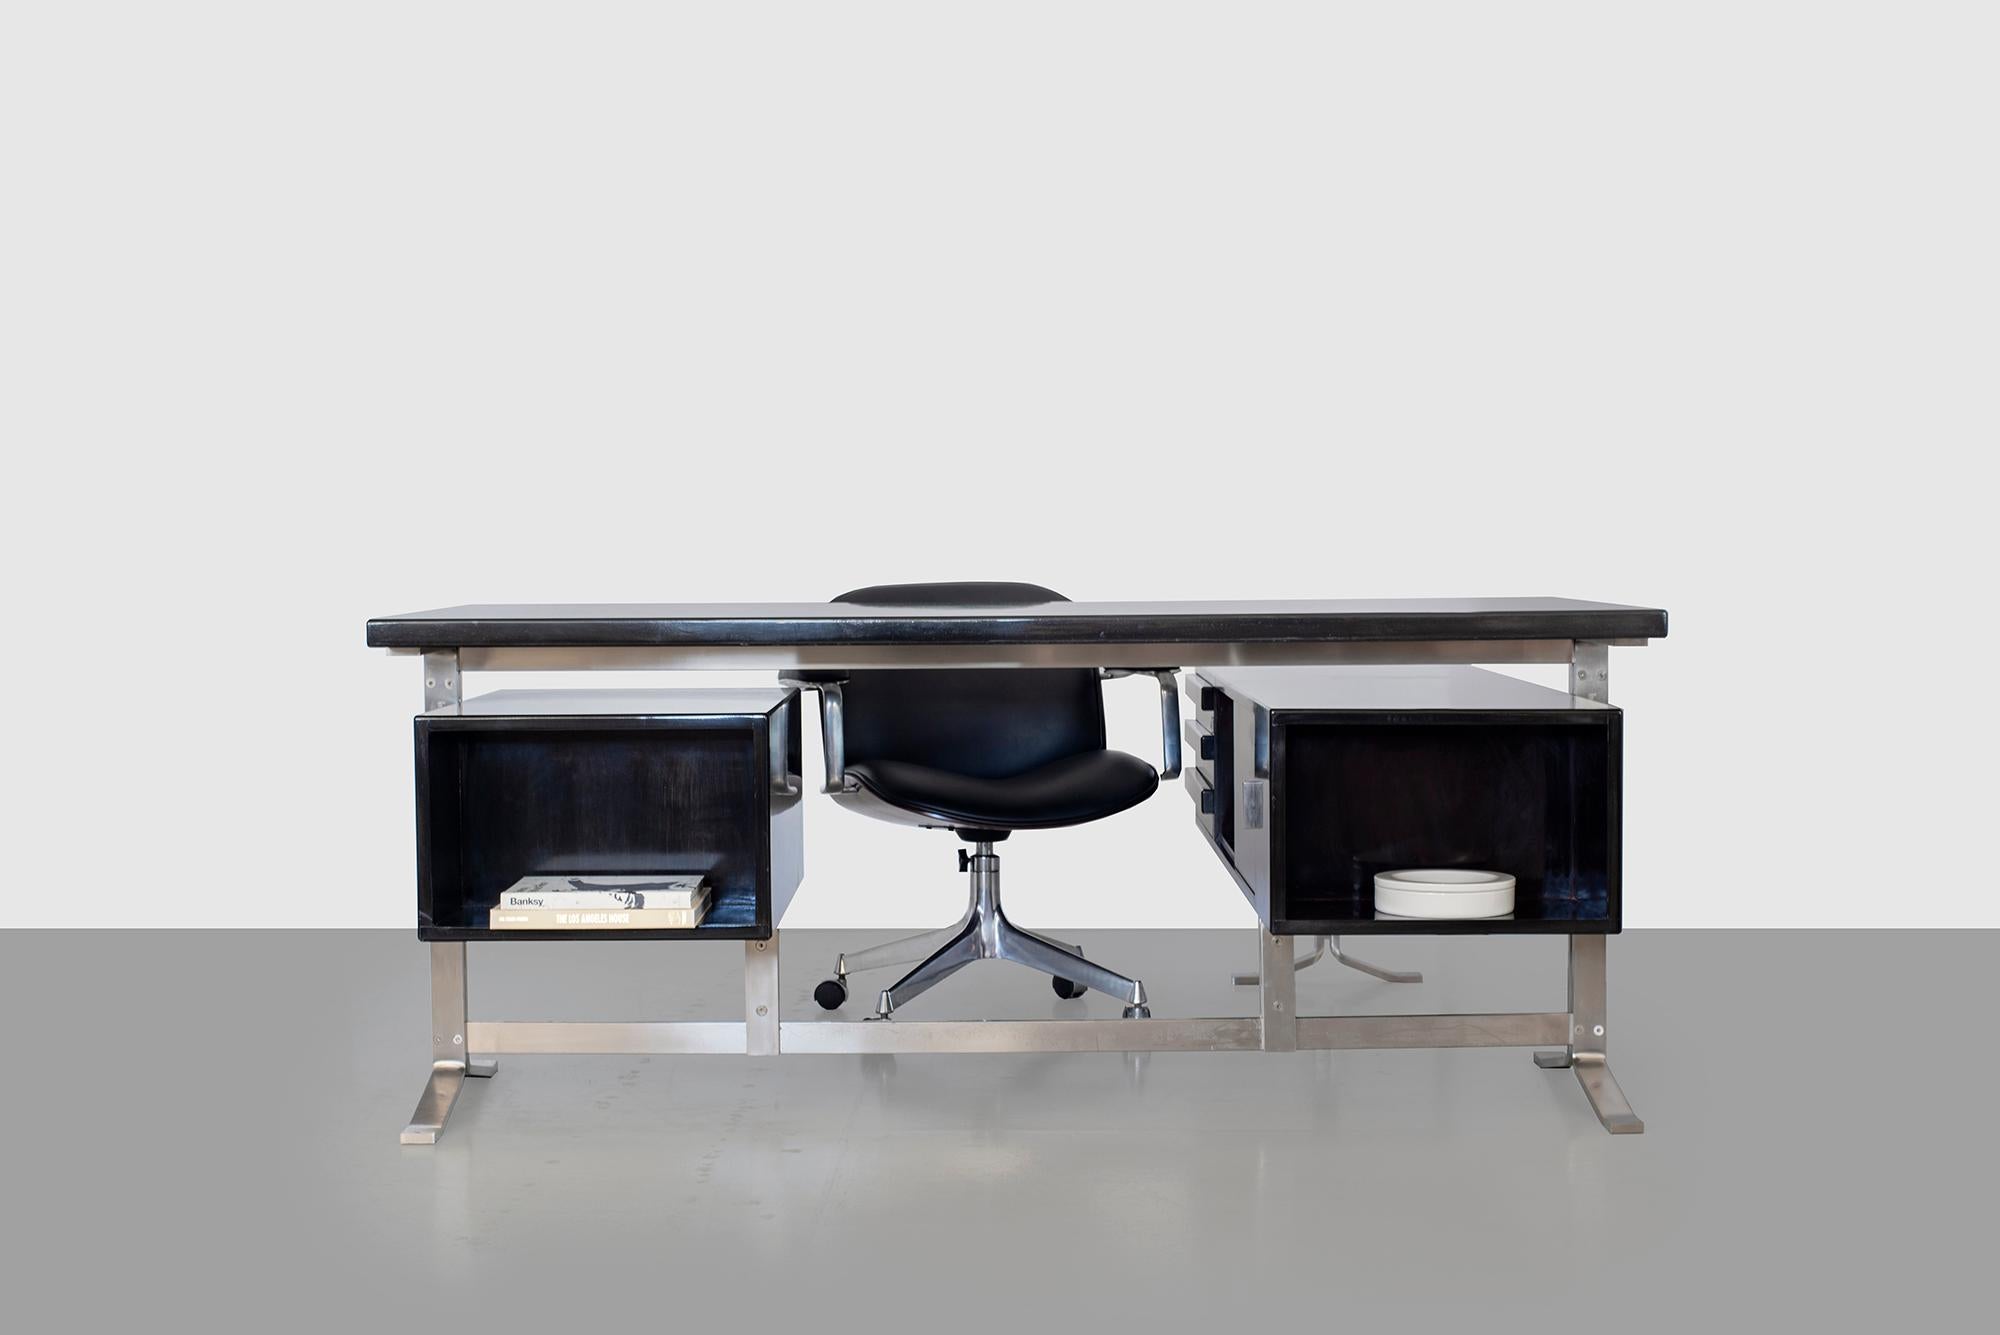 Hübscher Schreibtisch für Führungskräfte von Gianni Moscatelli für Forma Nova. Neu lackiert in einer dunklen Ebenholzbeize mit polierter Oberfläche. Die Schreibtischfläche ruht auf flachen Edelstahlbeinen mit schwebenden Schubladen auf beiden